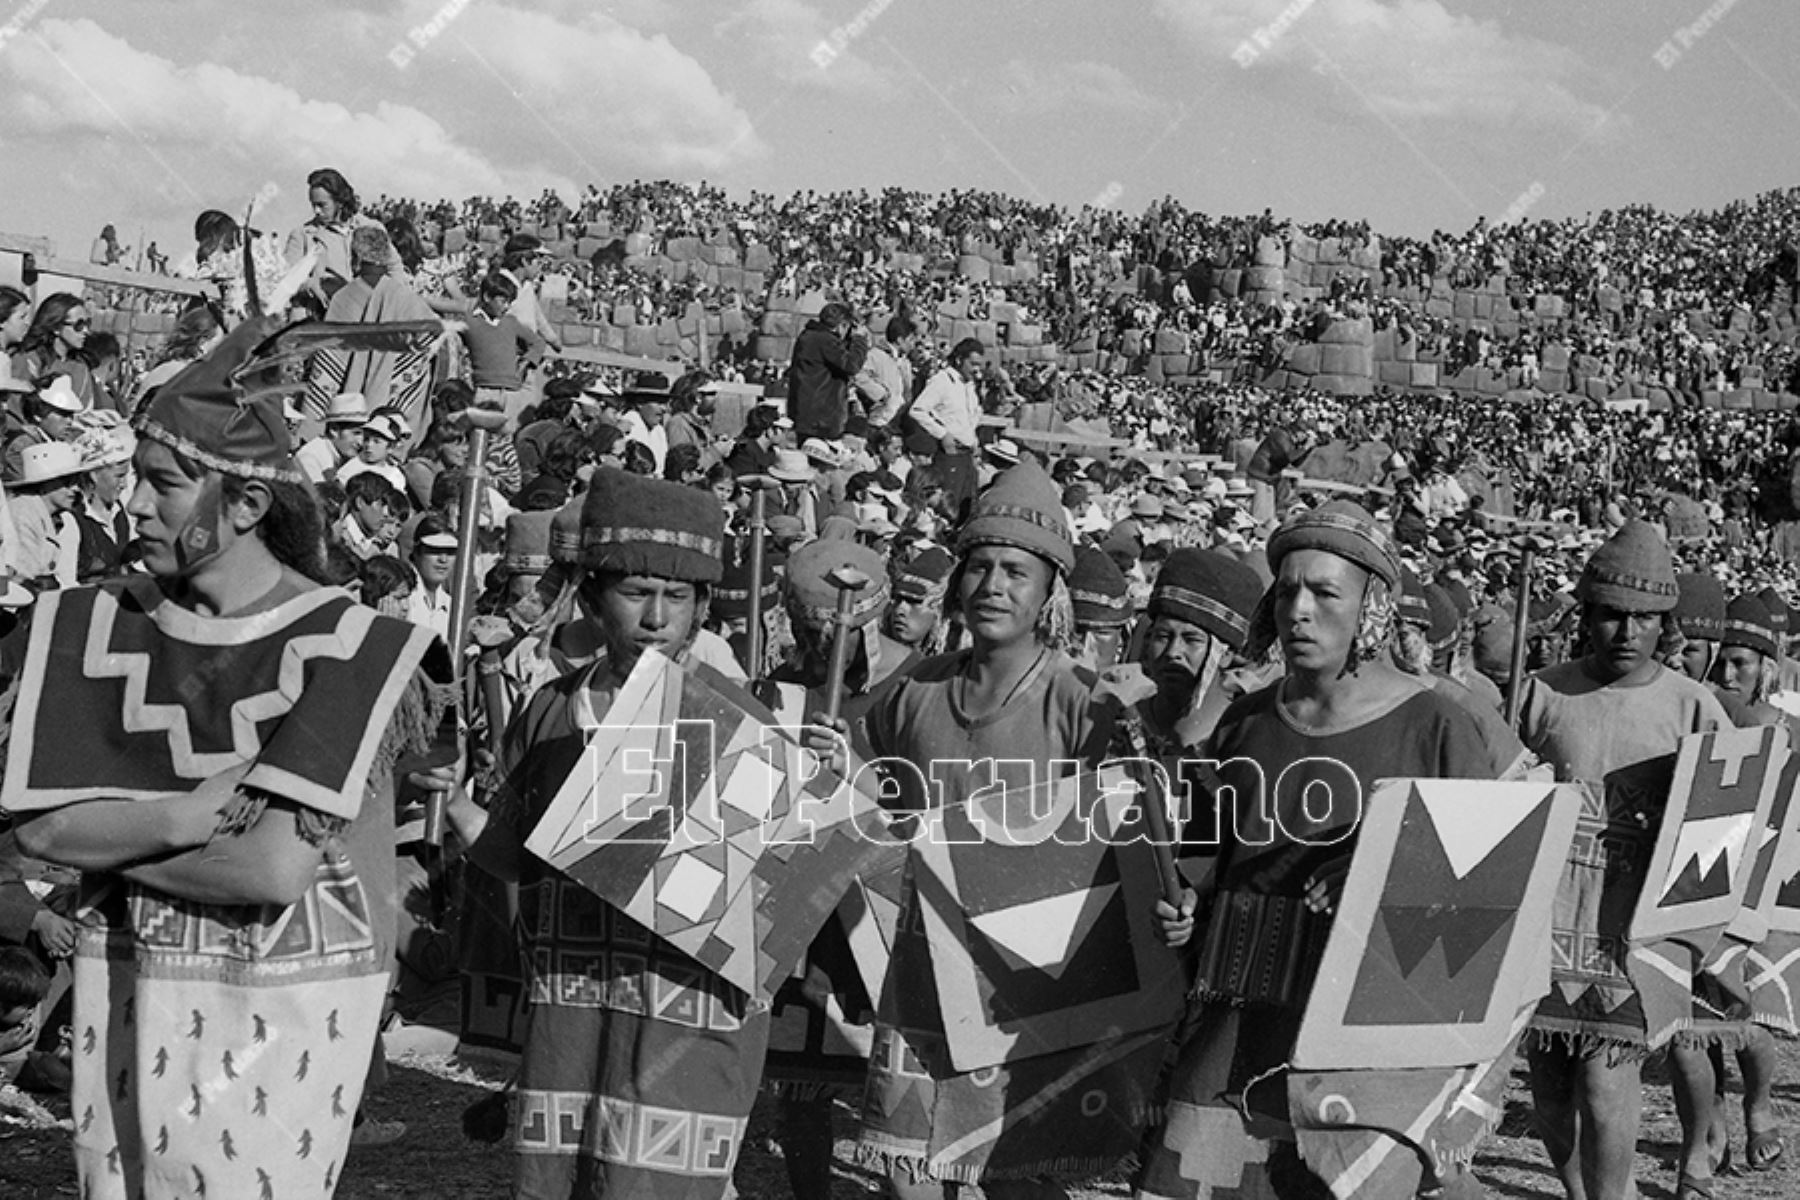 Lima - 24 junio 1975 / Celebración del Inti Raymi o Fiesta del Sol en la explanada de la fortaleza de Sacsayhuamán en la ciudad del Cusco. Foto: Archivo Histórico de El Peruano / Oswaldo Sánchez